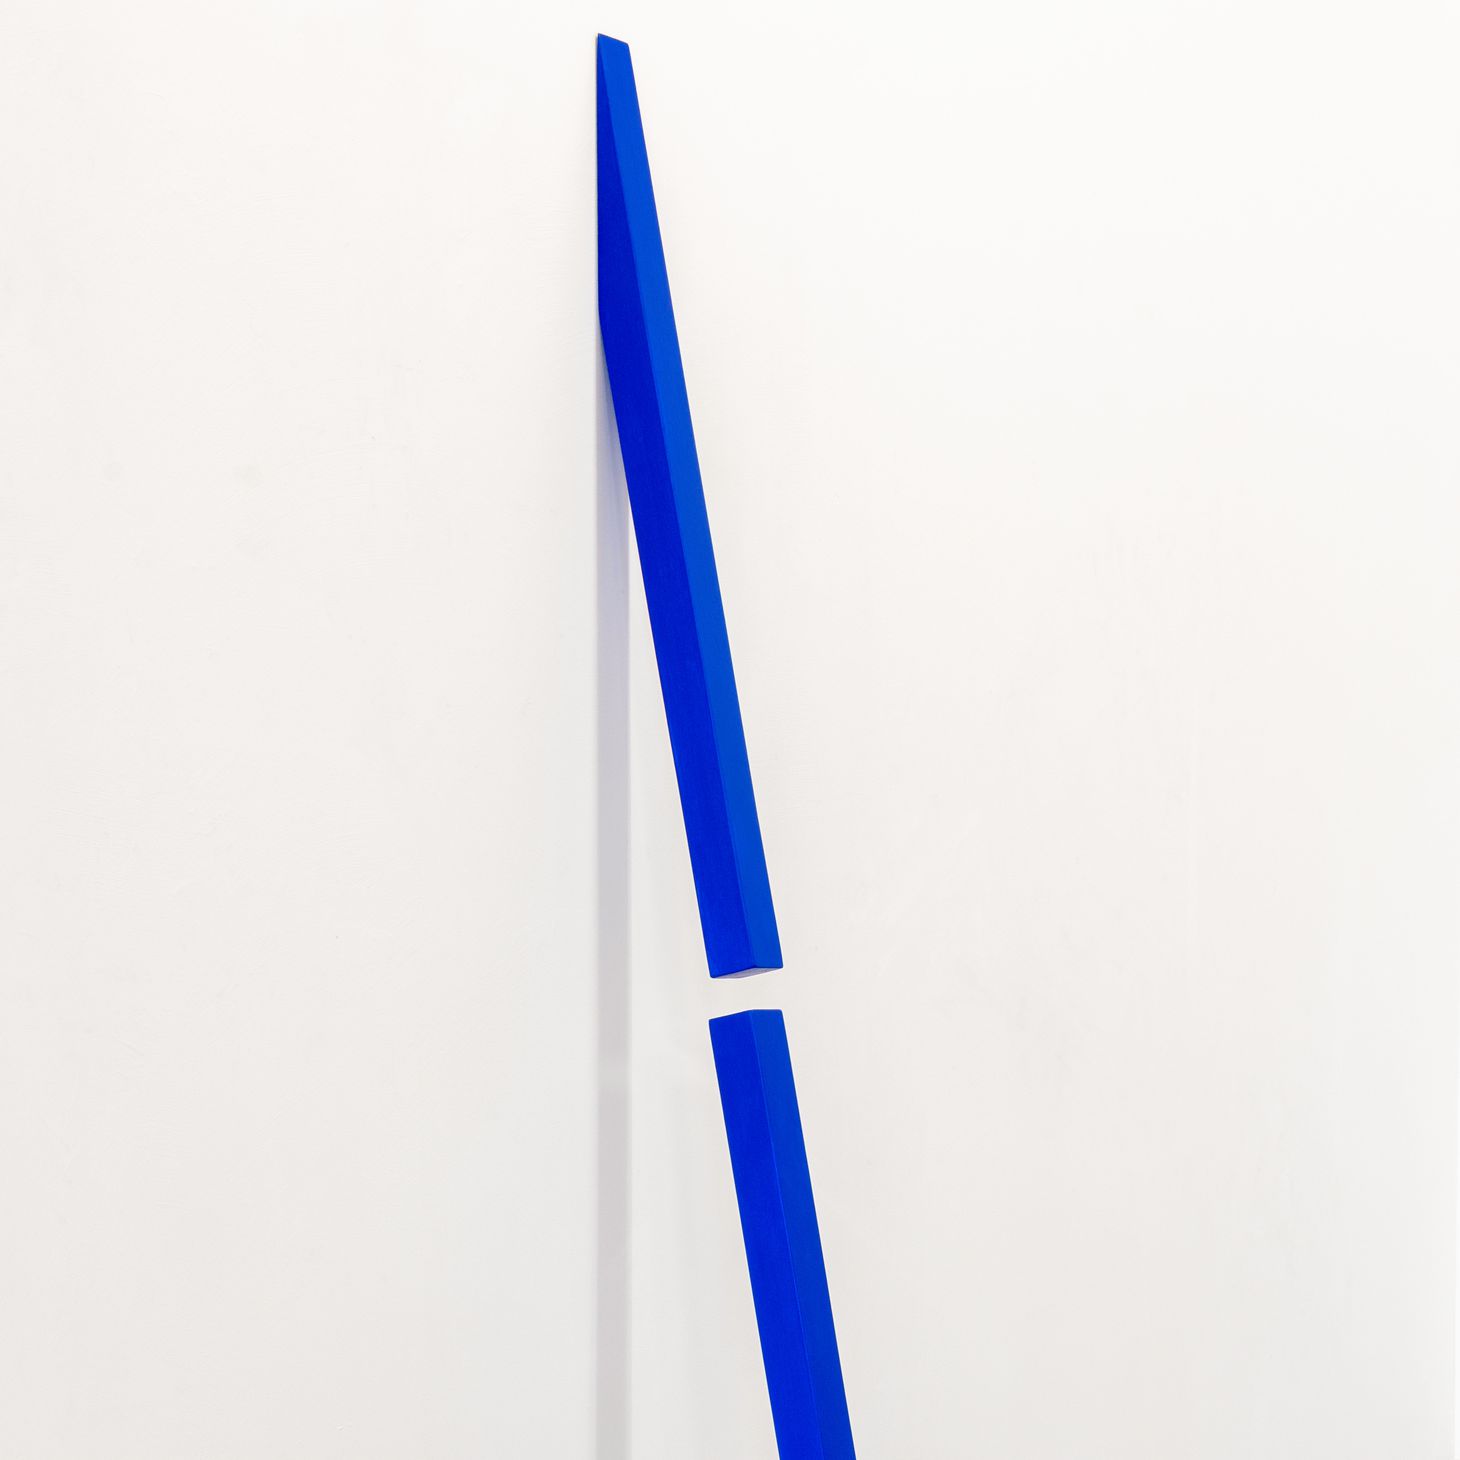 Hans Kooi, kinetic sculpture, untitled